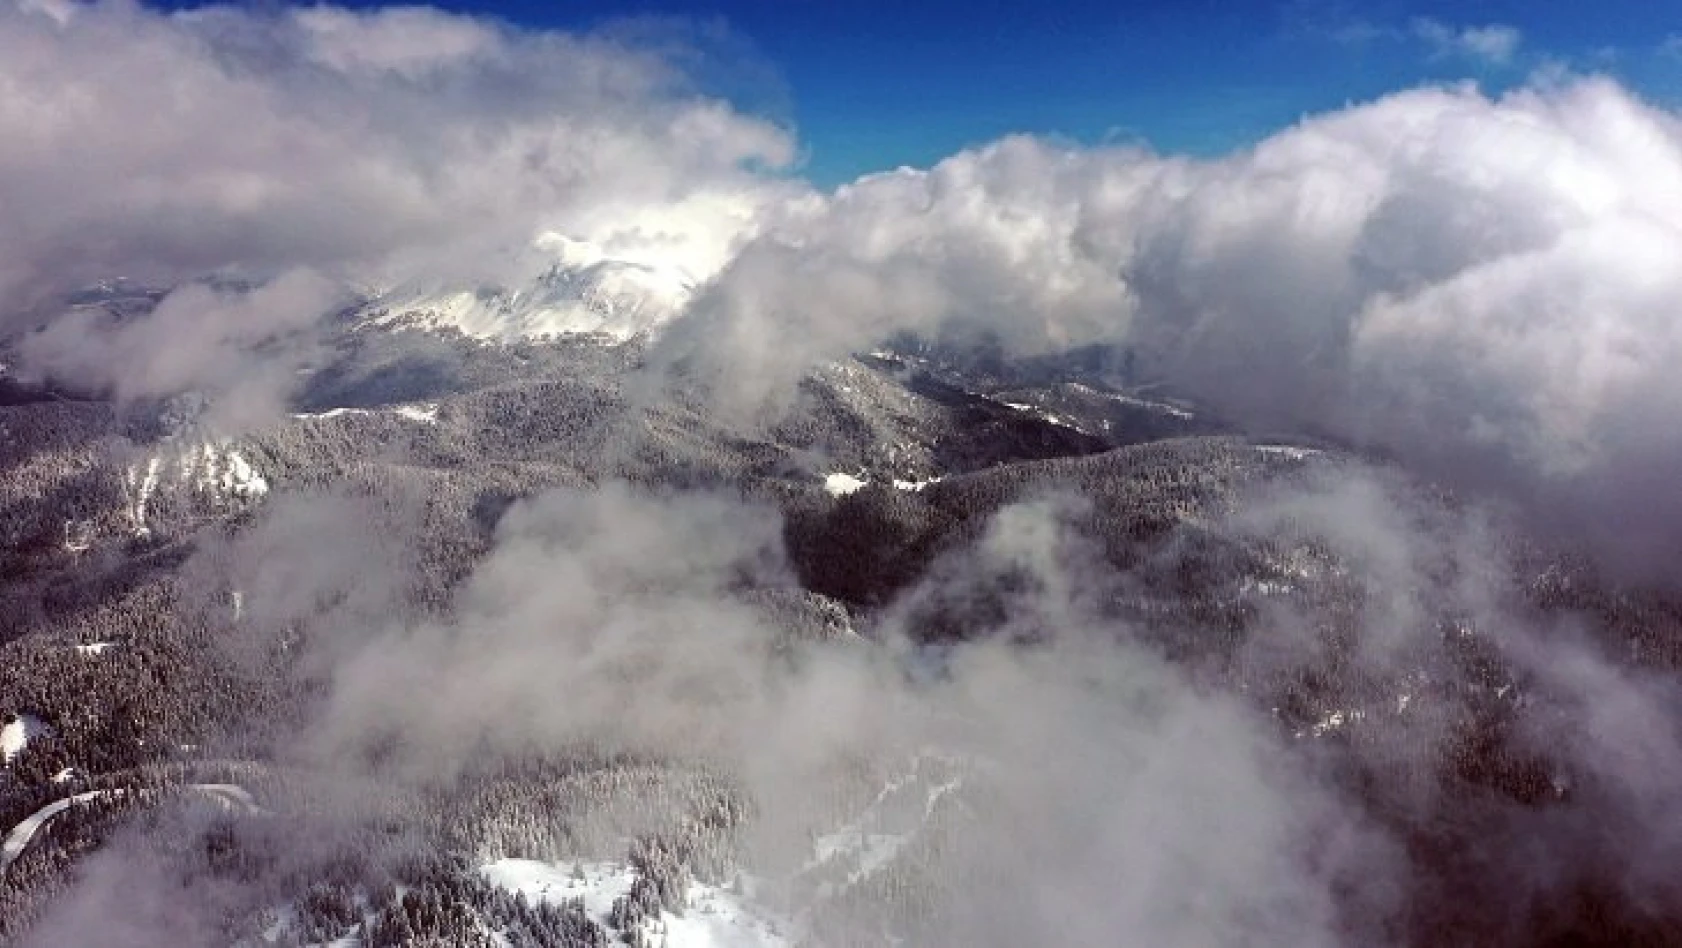 Ilgaz Dağı'nda kar ve sis havadan görüntülendi